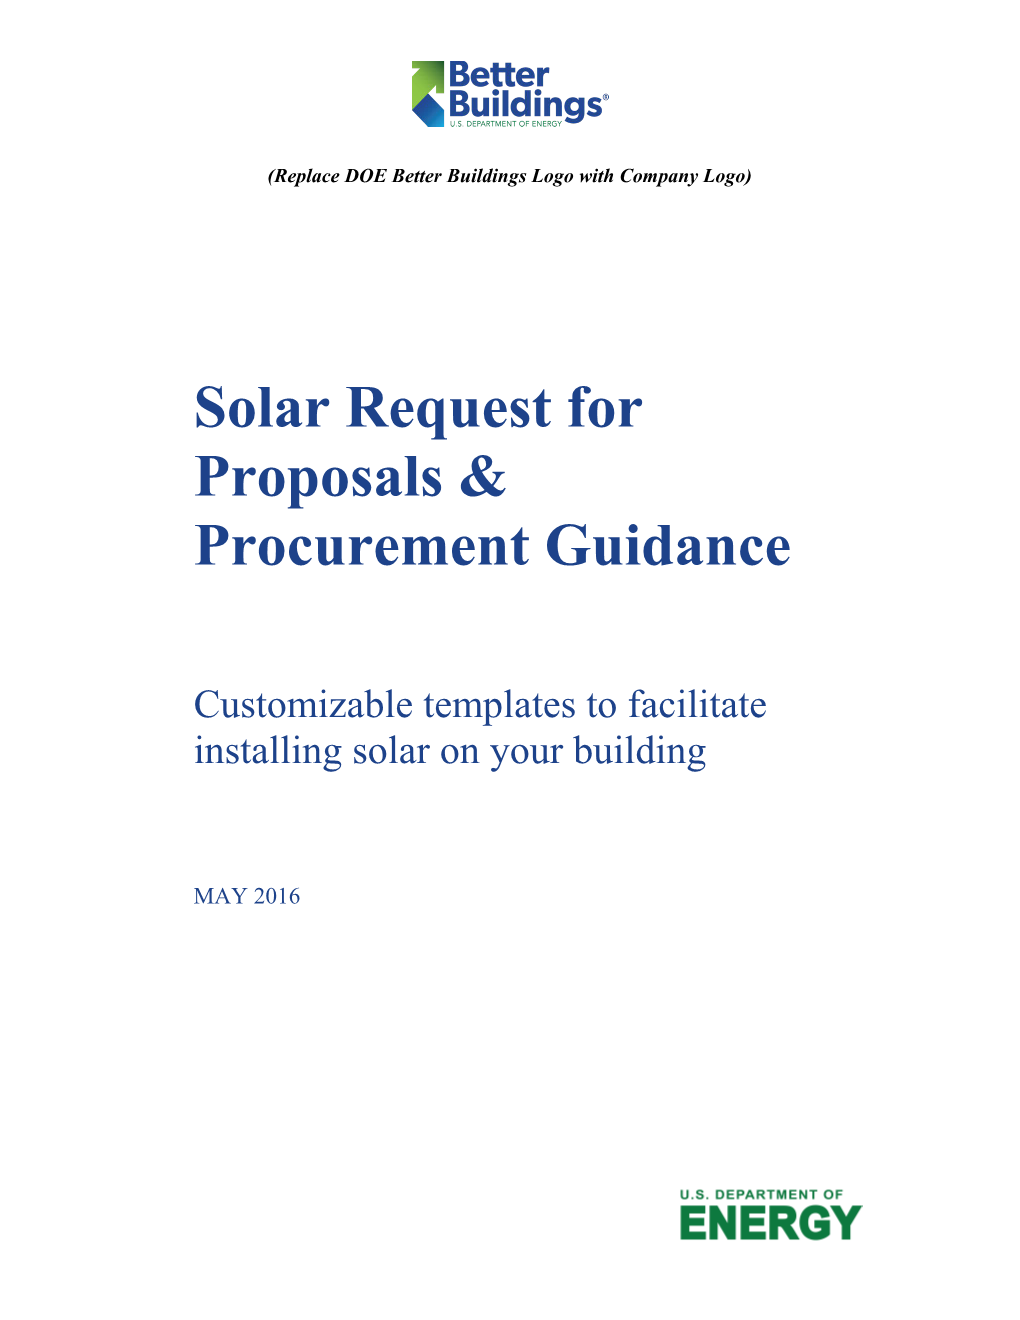 Solar Request for Proposals & Procurement Guidance